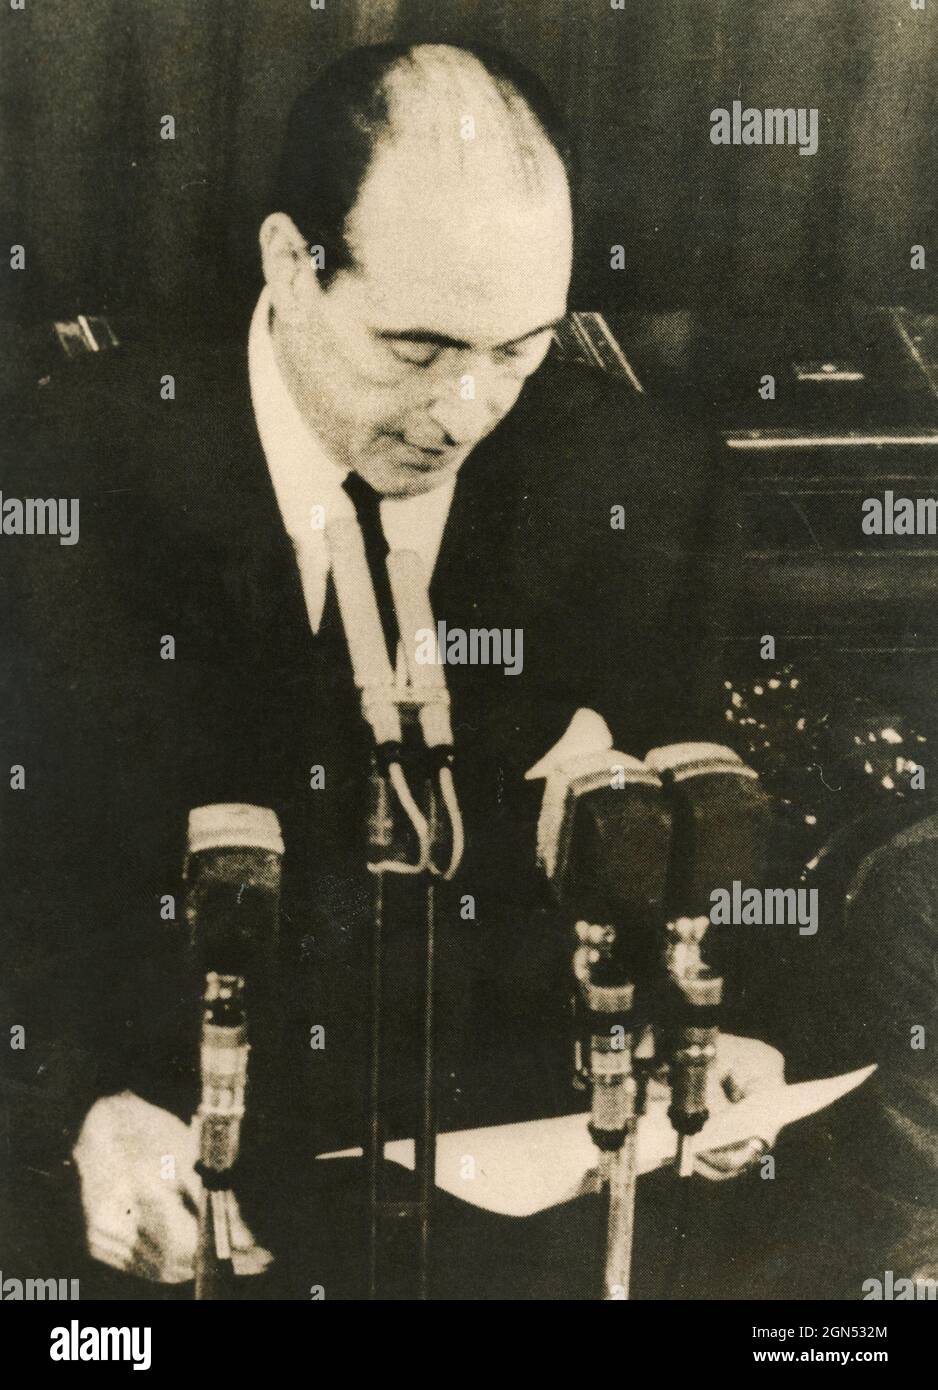 Italian politician Fernando Tambroni speaks to the Chamber, Italy 1950s Stock Photo